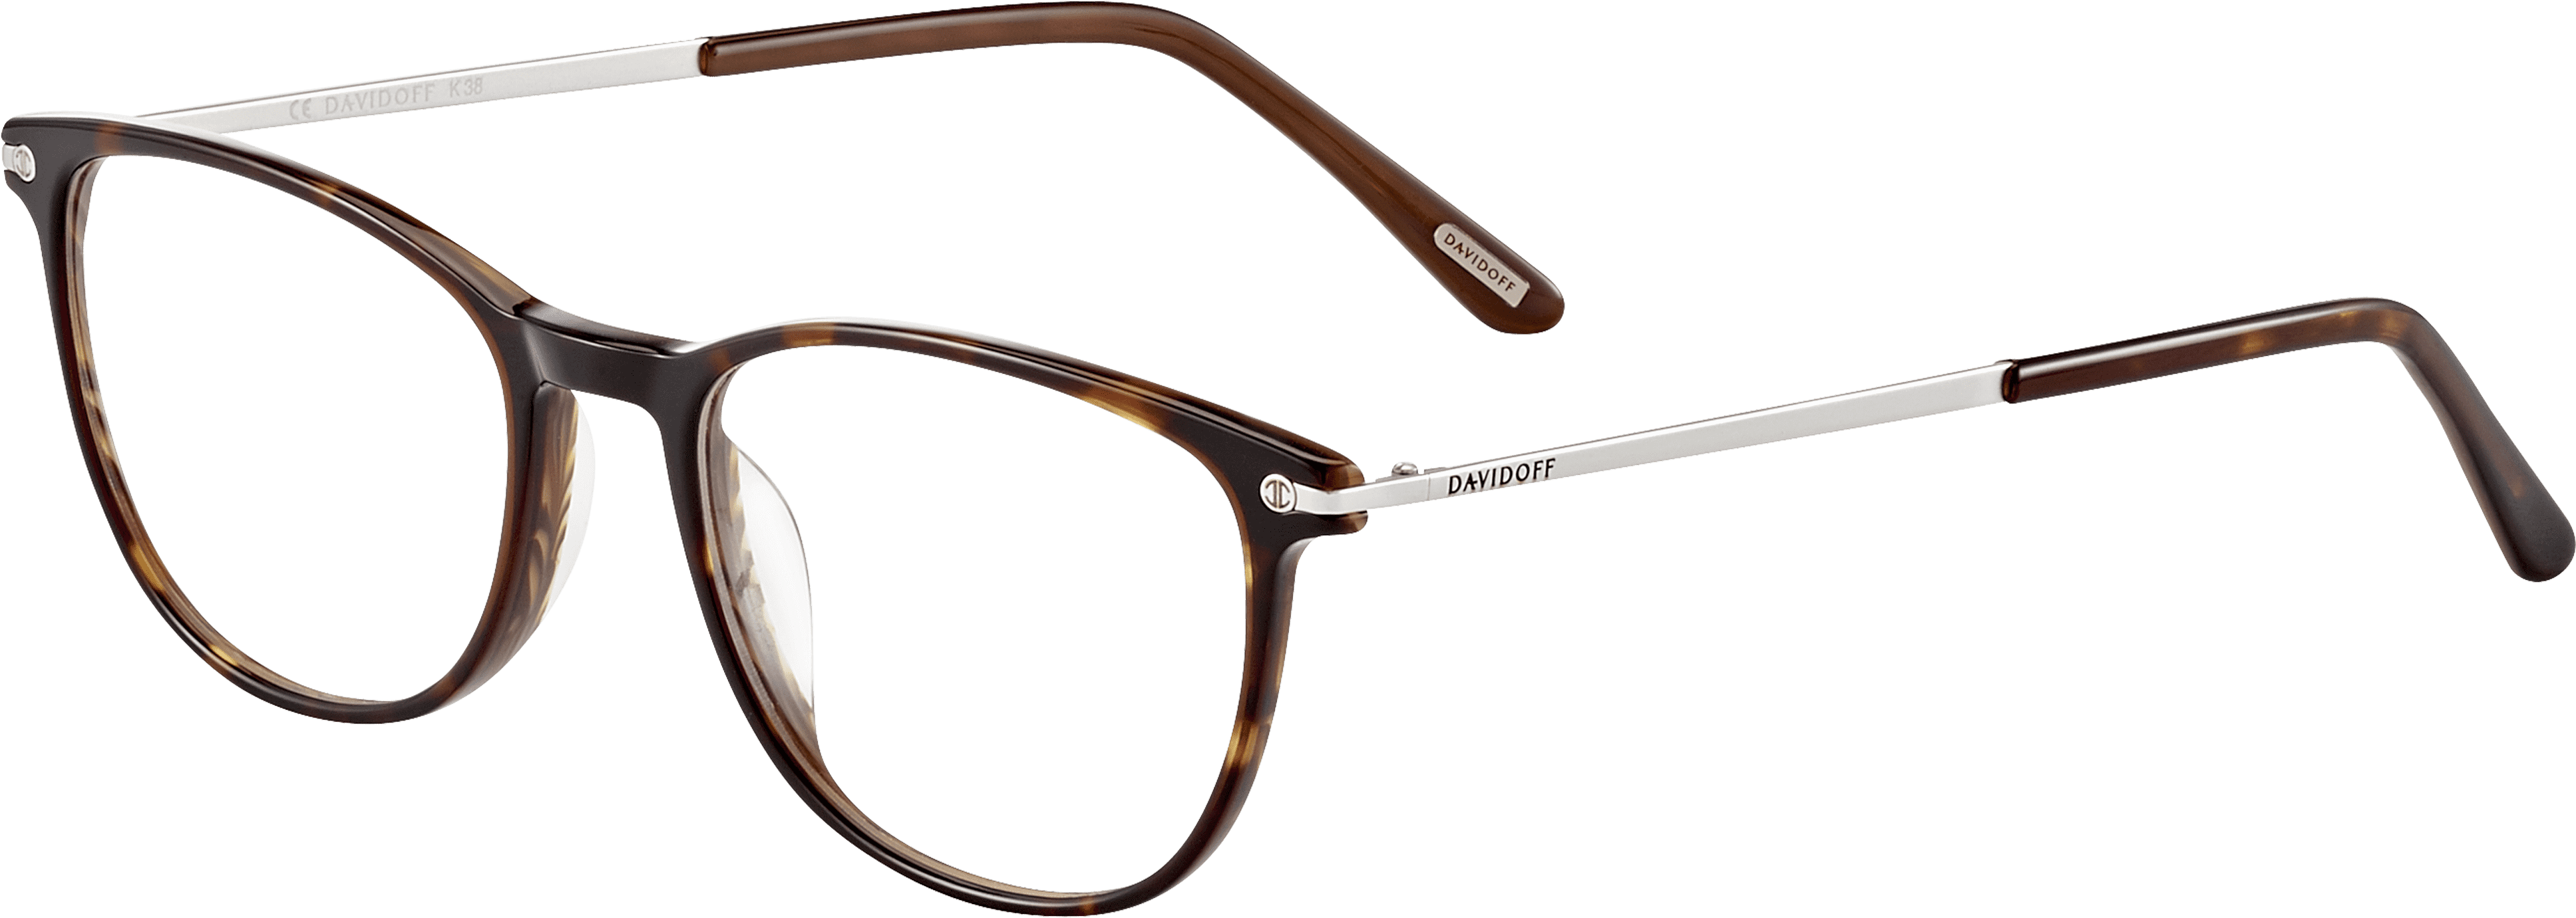 Elegant Optical Frame Mod - Glasses Clipart (4096x4096), Png Download